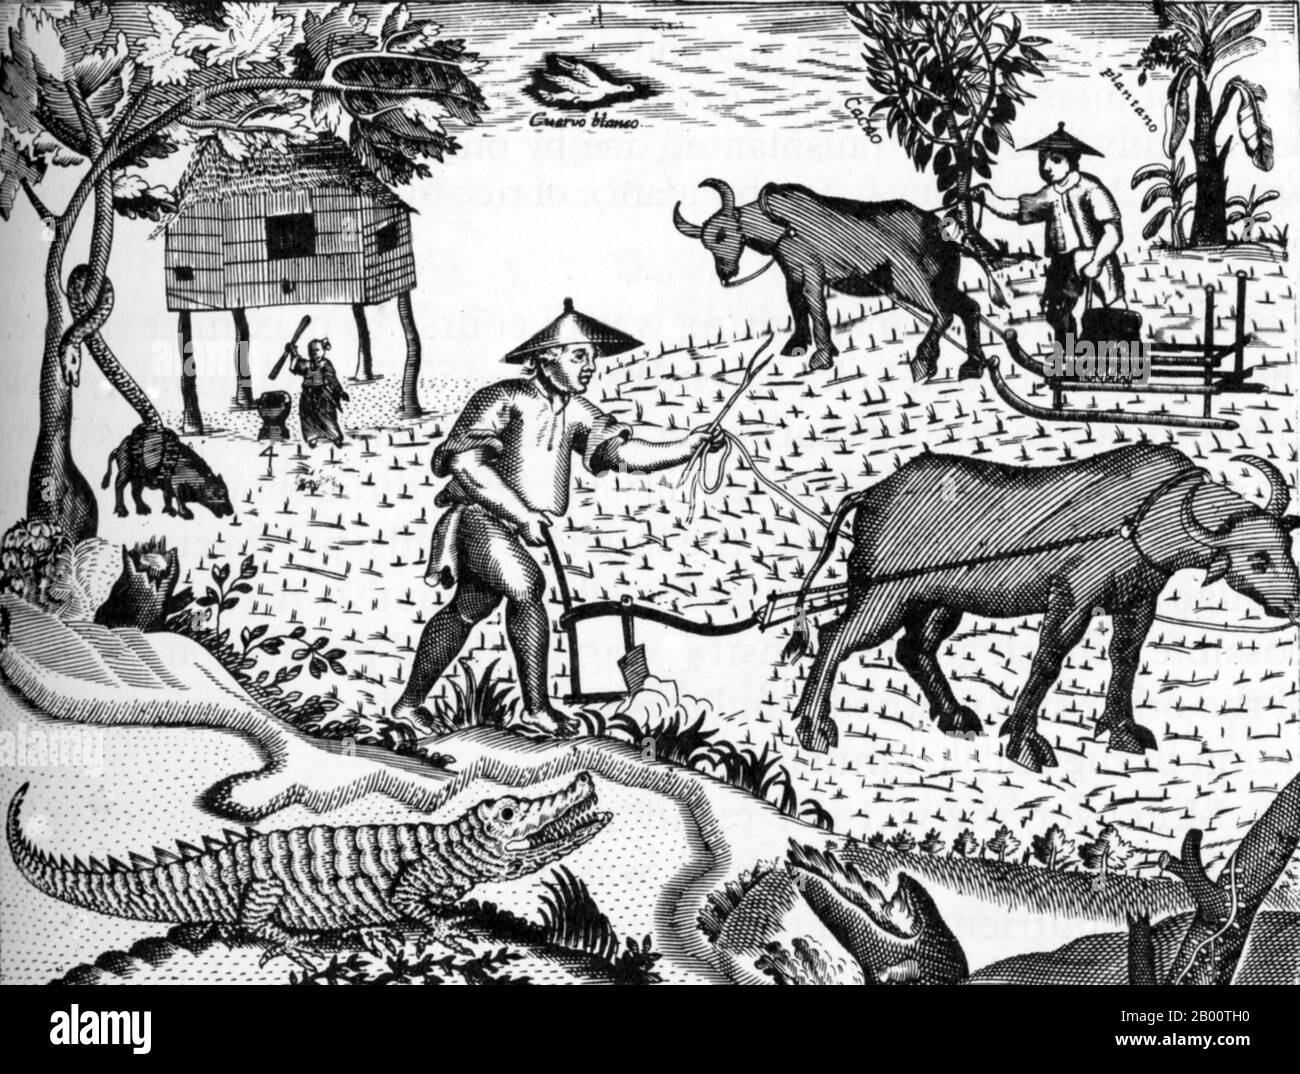 Filippine: Contadini filippini al lavoro in un campo di riso. Illustrazione di Pedro Murillo Velarde (1696-1753), 1734. Questa illustrazione è apparsa per la prima volta su una mappa delle Filippine dal missionario spagnolo Pedro Murillo Velarde. Mostra gli agricoltori che operano aratri trainati da bue rudimentali mentre una donna sbuccia il riso sotto una capanna. Dal 1565 al 1821, le Filippine furono governate come territorio del Vicereame della Nuova Spagna e poi furono amministrate direttamente da Madrid dopo la guerra di indipendenza messicana. I galeoni che collegano Manila ad Acapulco viaggiarono una o due volte l'anno tra il XVI e il XIX secolo. Foto Stock